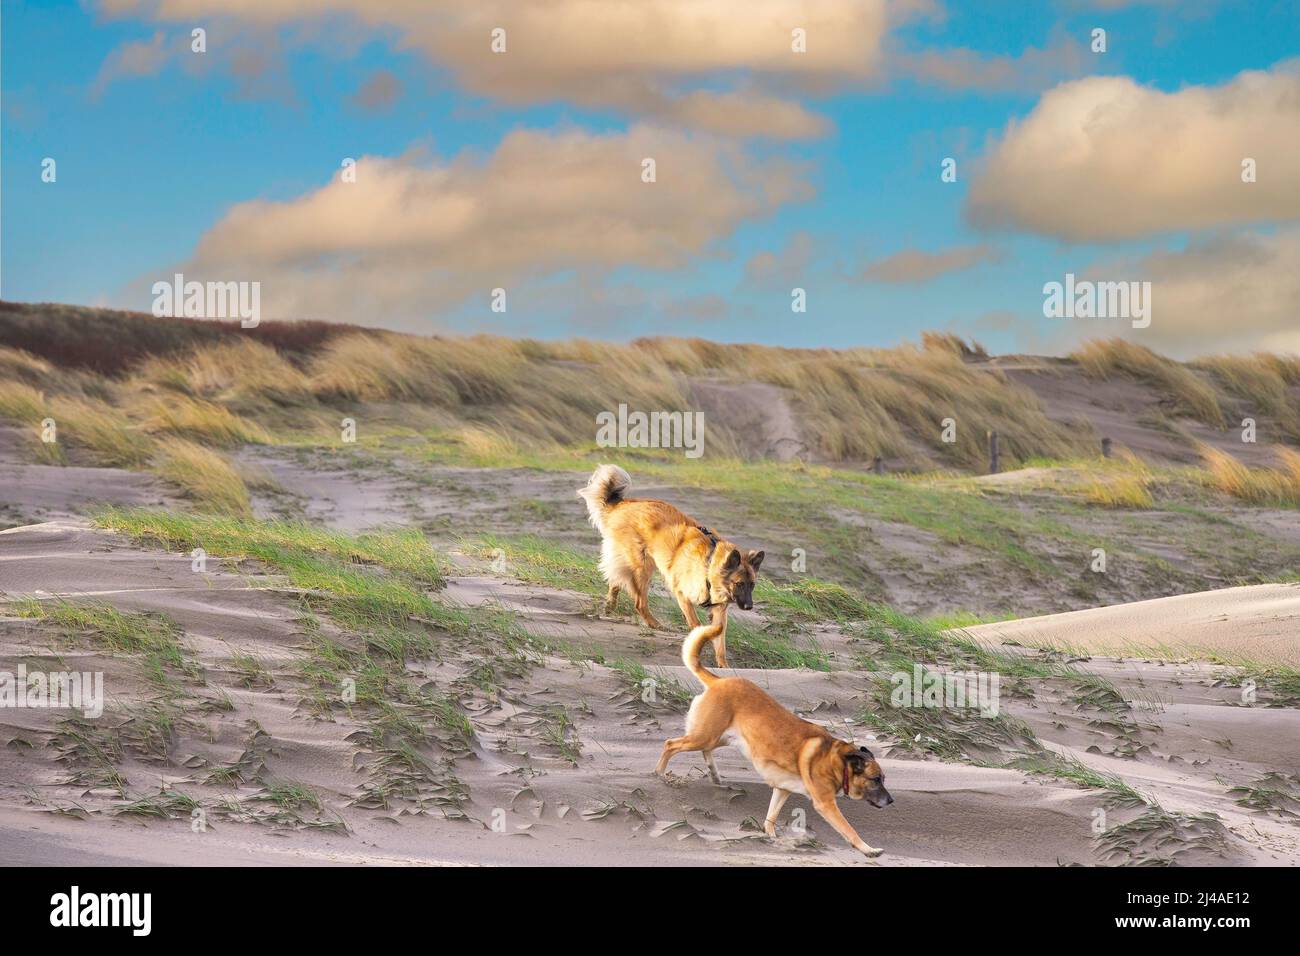 Amanecer paisaje costero con dunas con hierba de marram y dos perros de oveja un pastor alemán y Malinois corriendo de arriba a abajo en la cálida luz Foto de stock